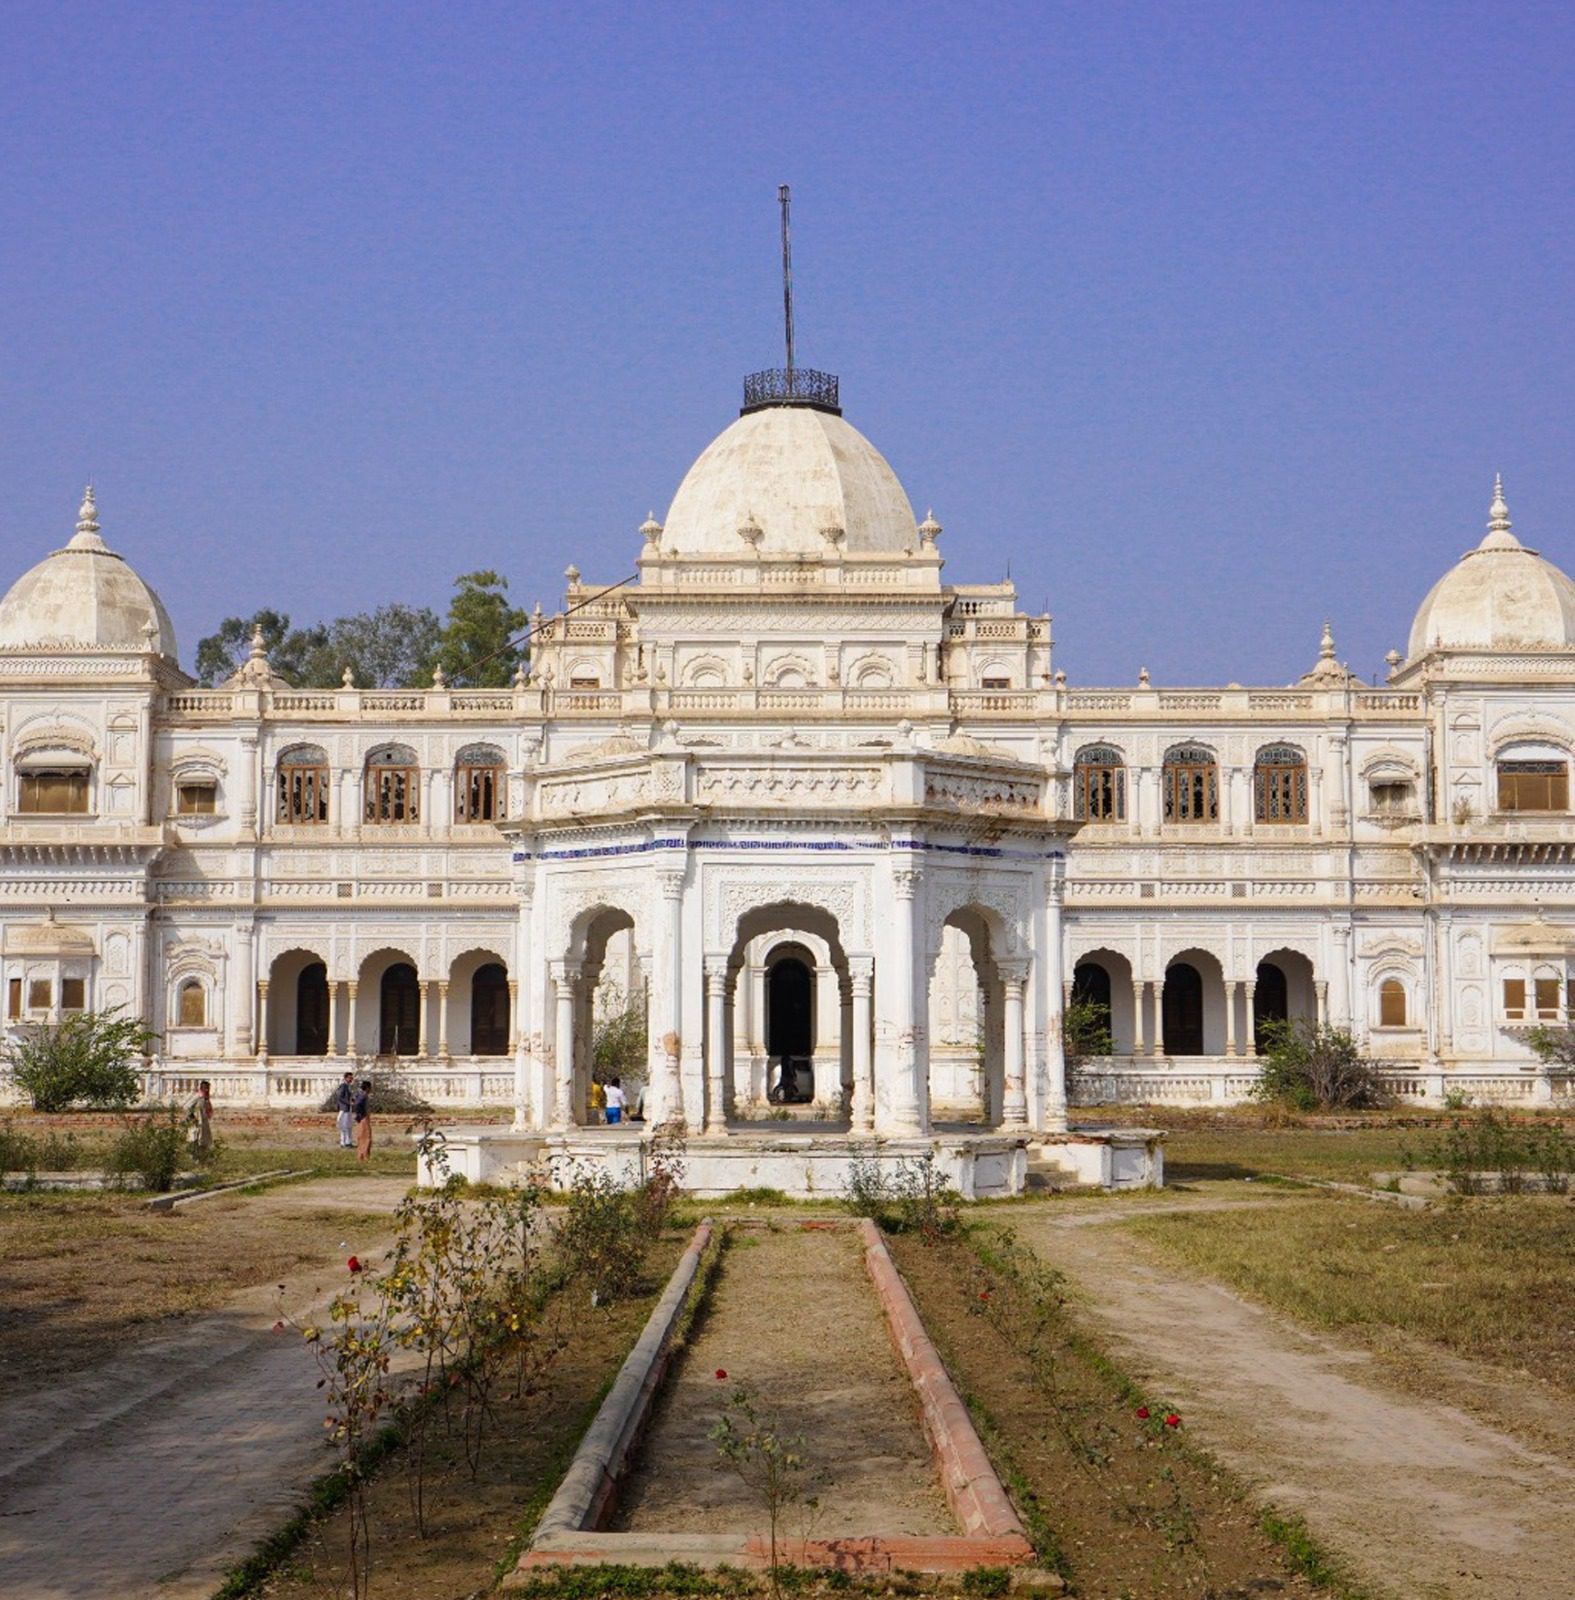 Sadiq Garh Palace – Bahawalpur